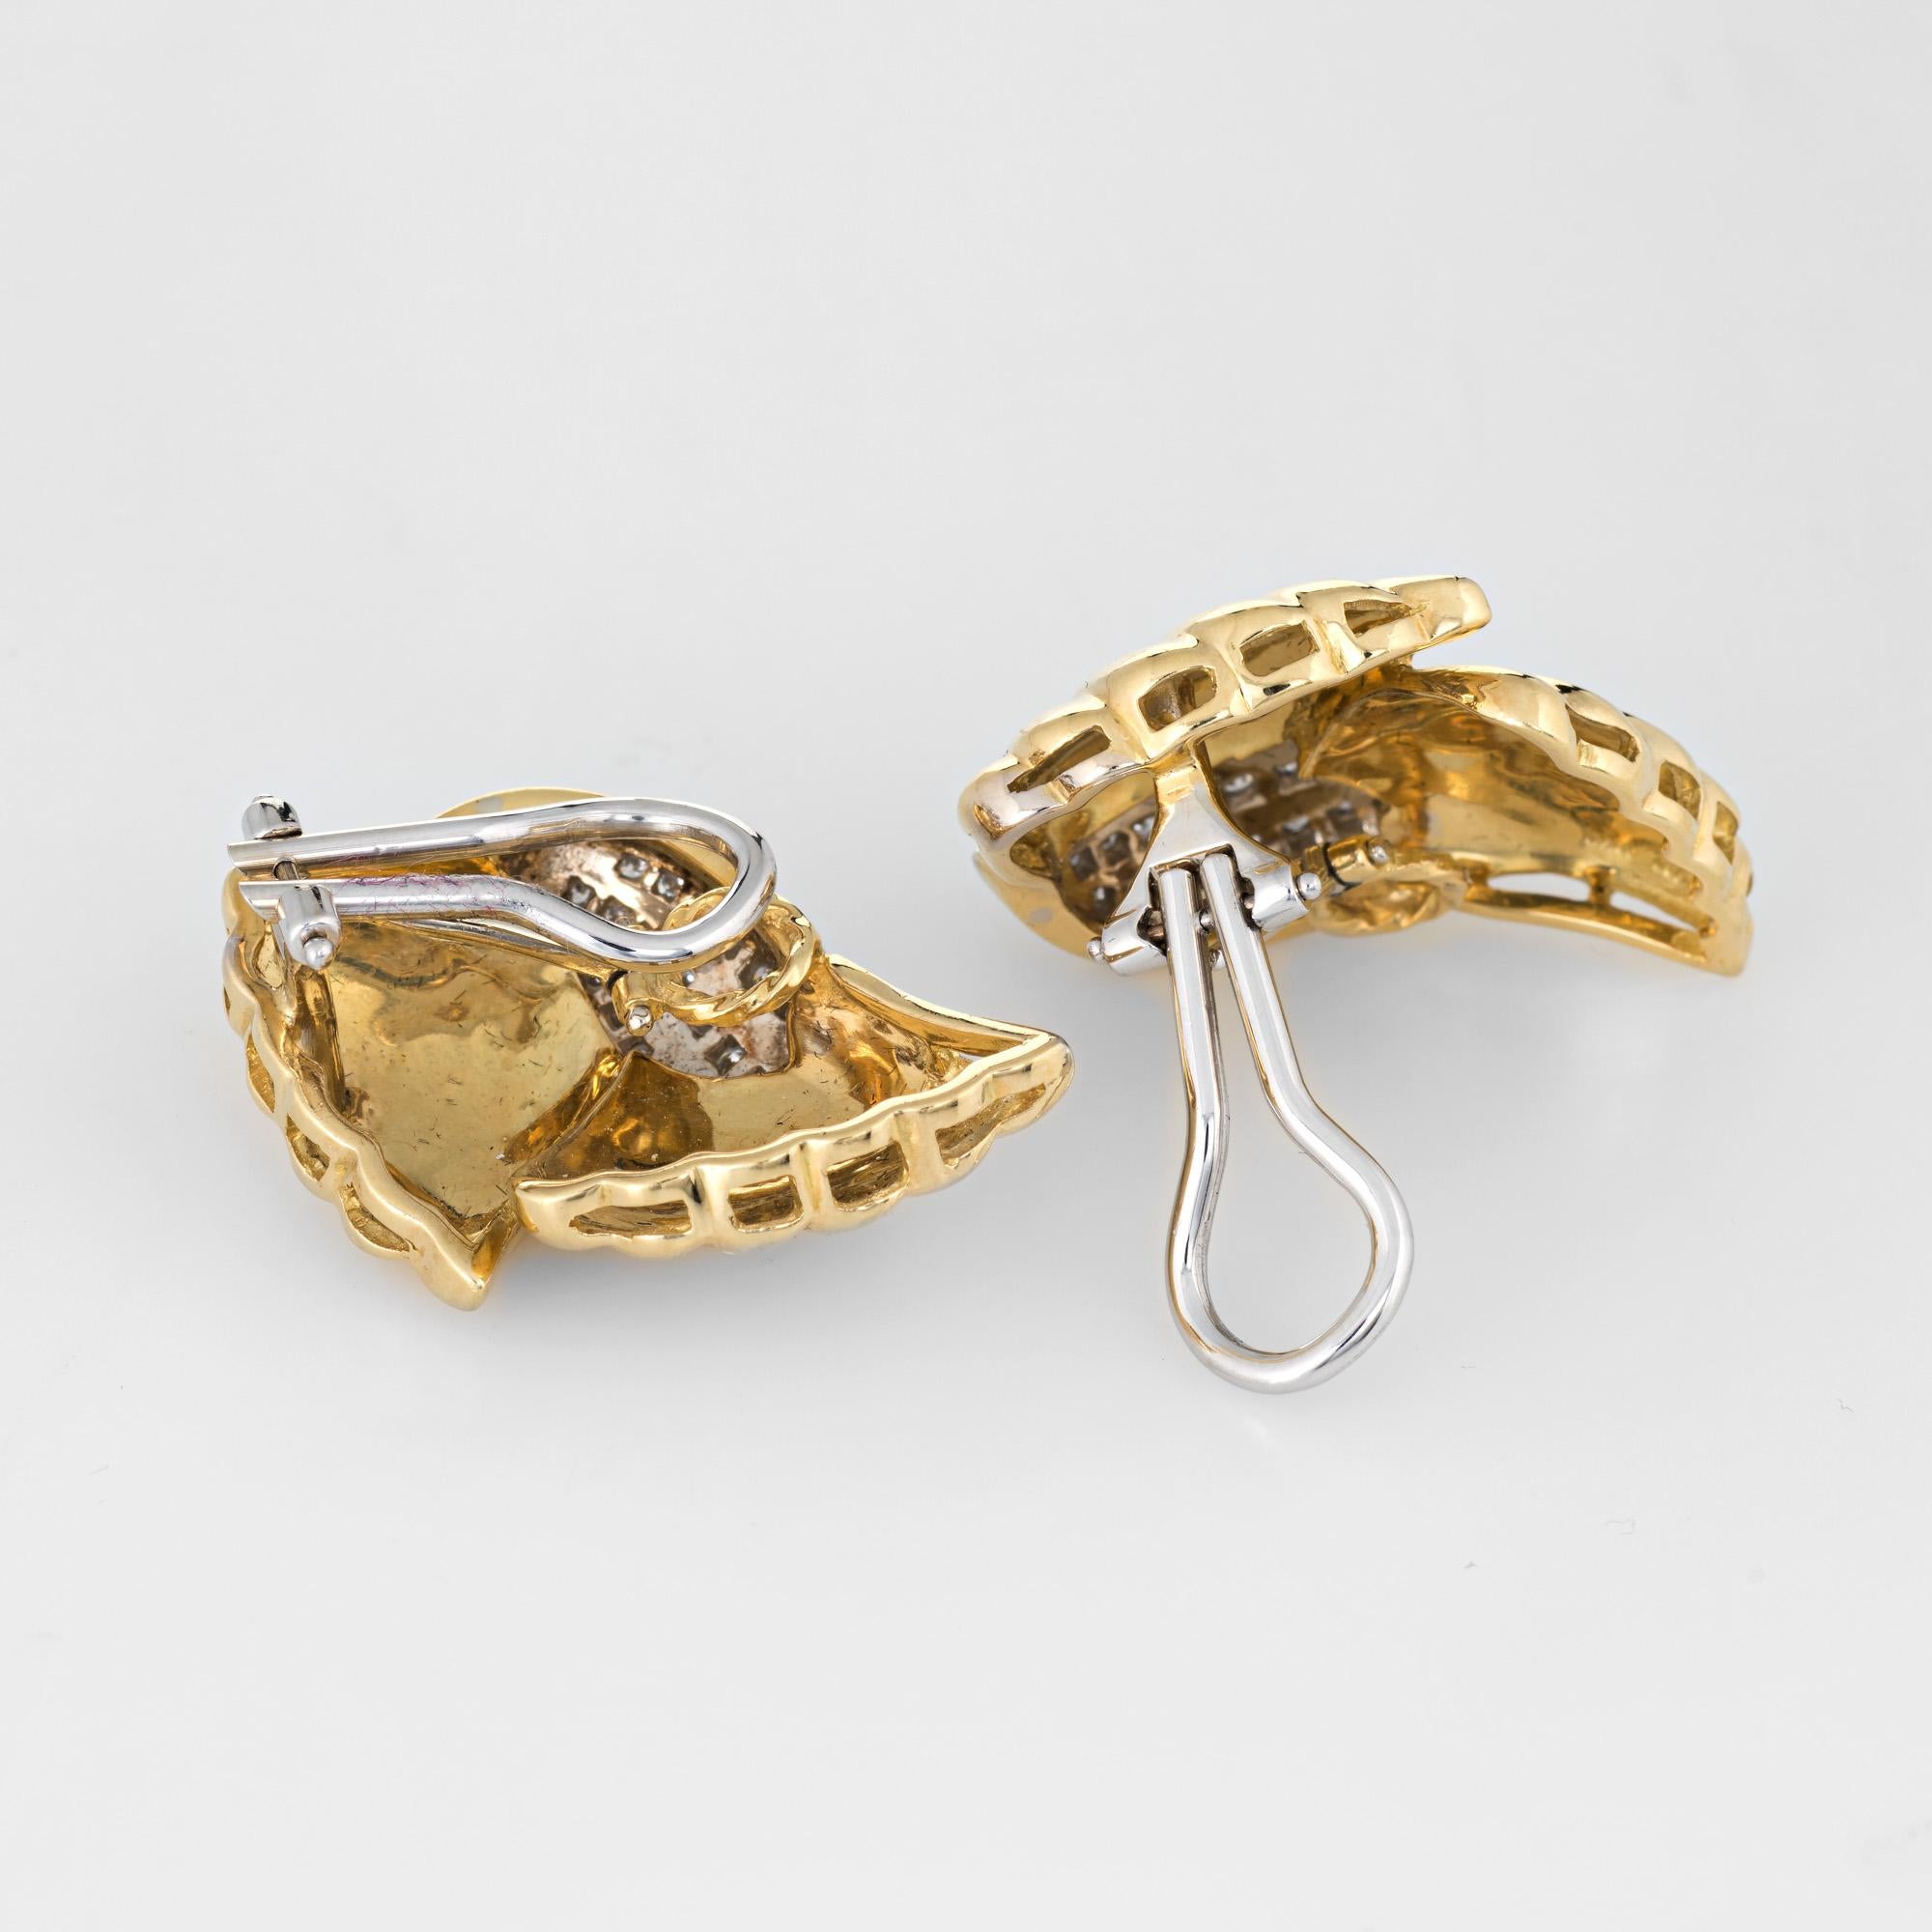 Boucles d'oreilles cocktail élégantes en diamant, réalisées en or jaune 18 carats (vers les années 1980). 

44 diamants ronds de taille brillant totalisent un poids estimé à 0,60 carats (couleur estimée H-I et pureté VS2-SI1).

Les boucles